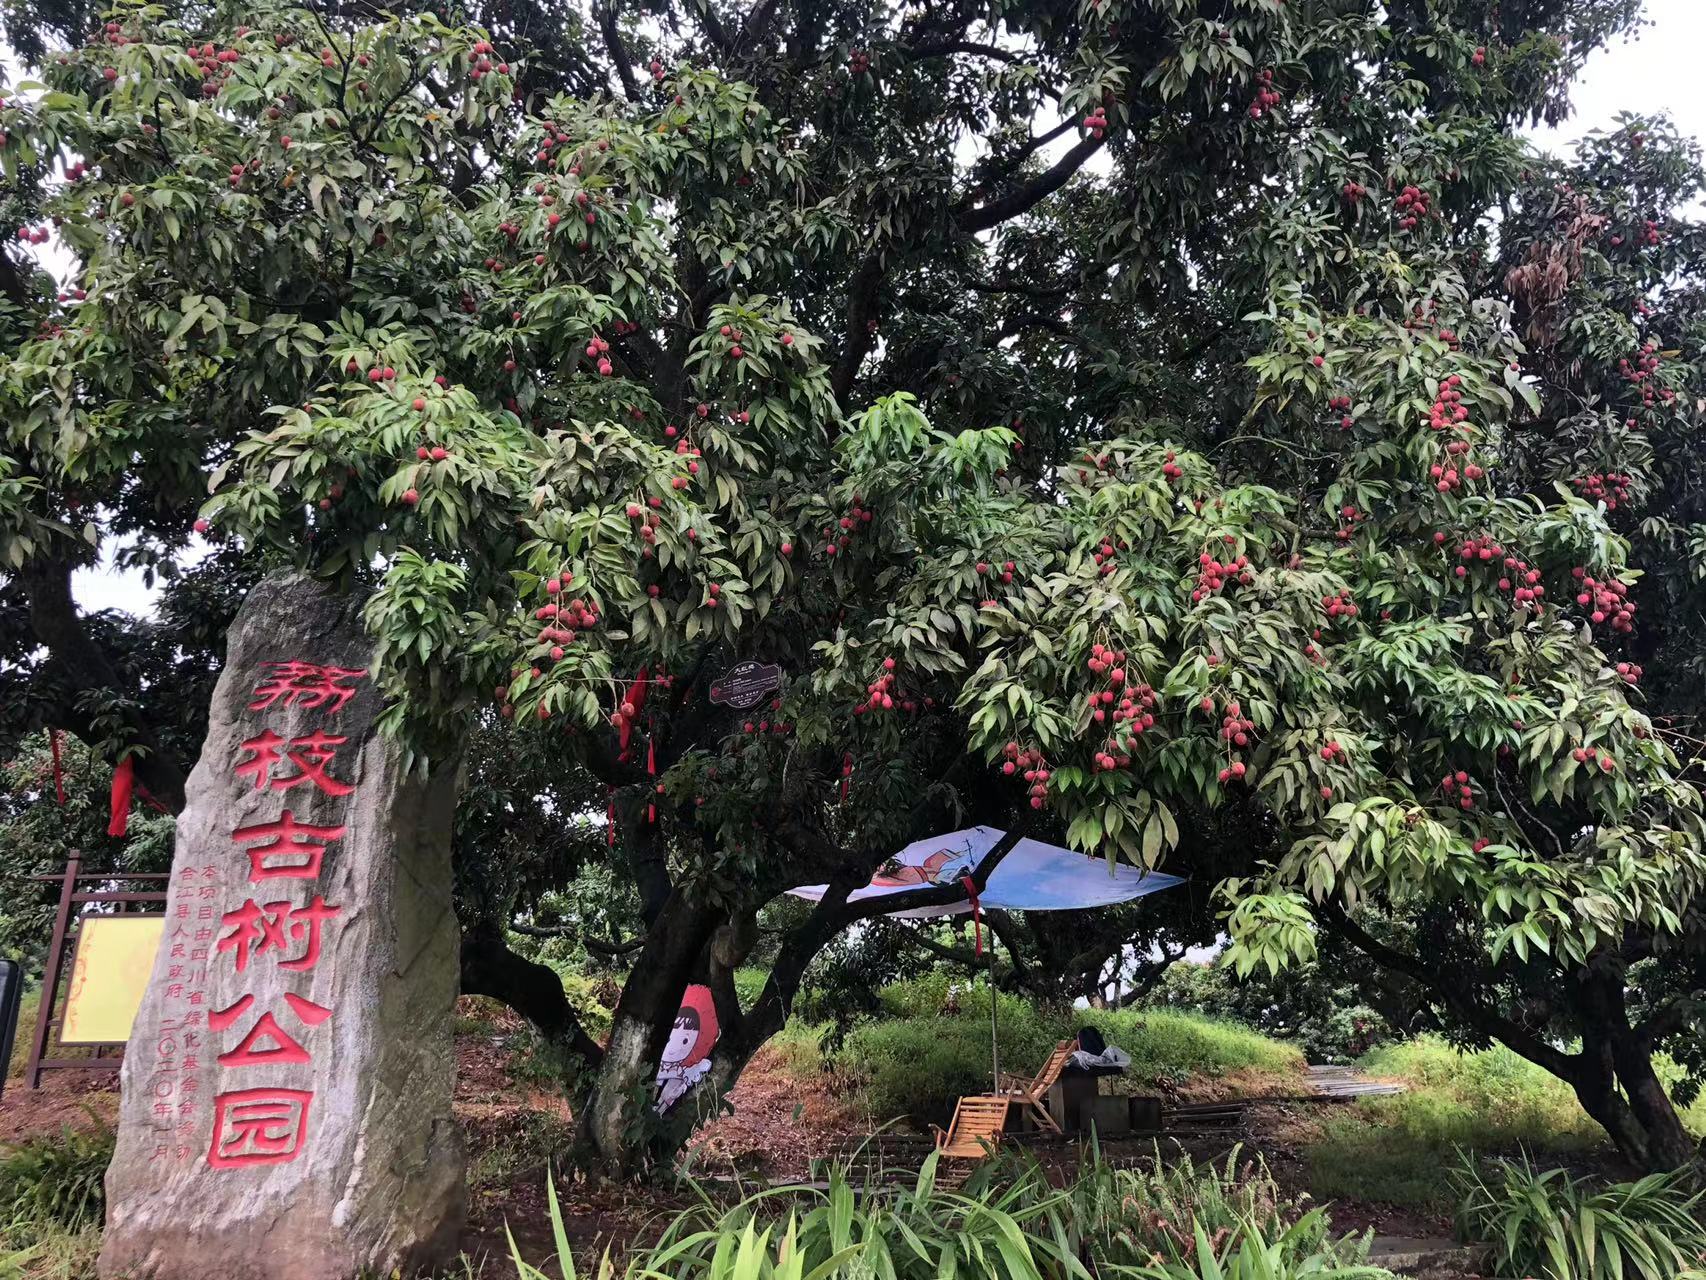 < 리쯔 고수공원(荔枝古树公园)으로 최근 많은 리쯔관련 대표 행사들이 열리고 있어, 많은 타지인들이 방문하고 있다. - 출처 : 통신원 >